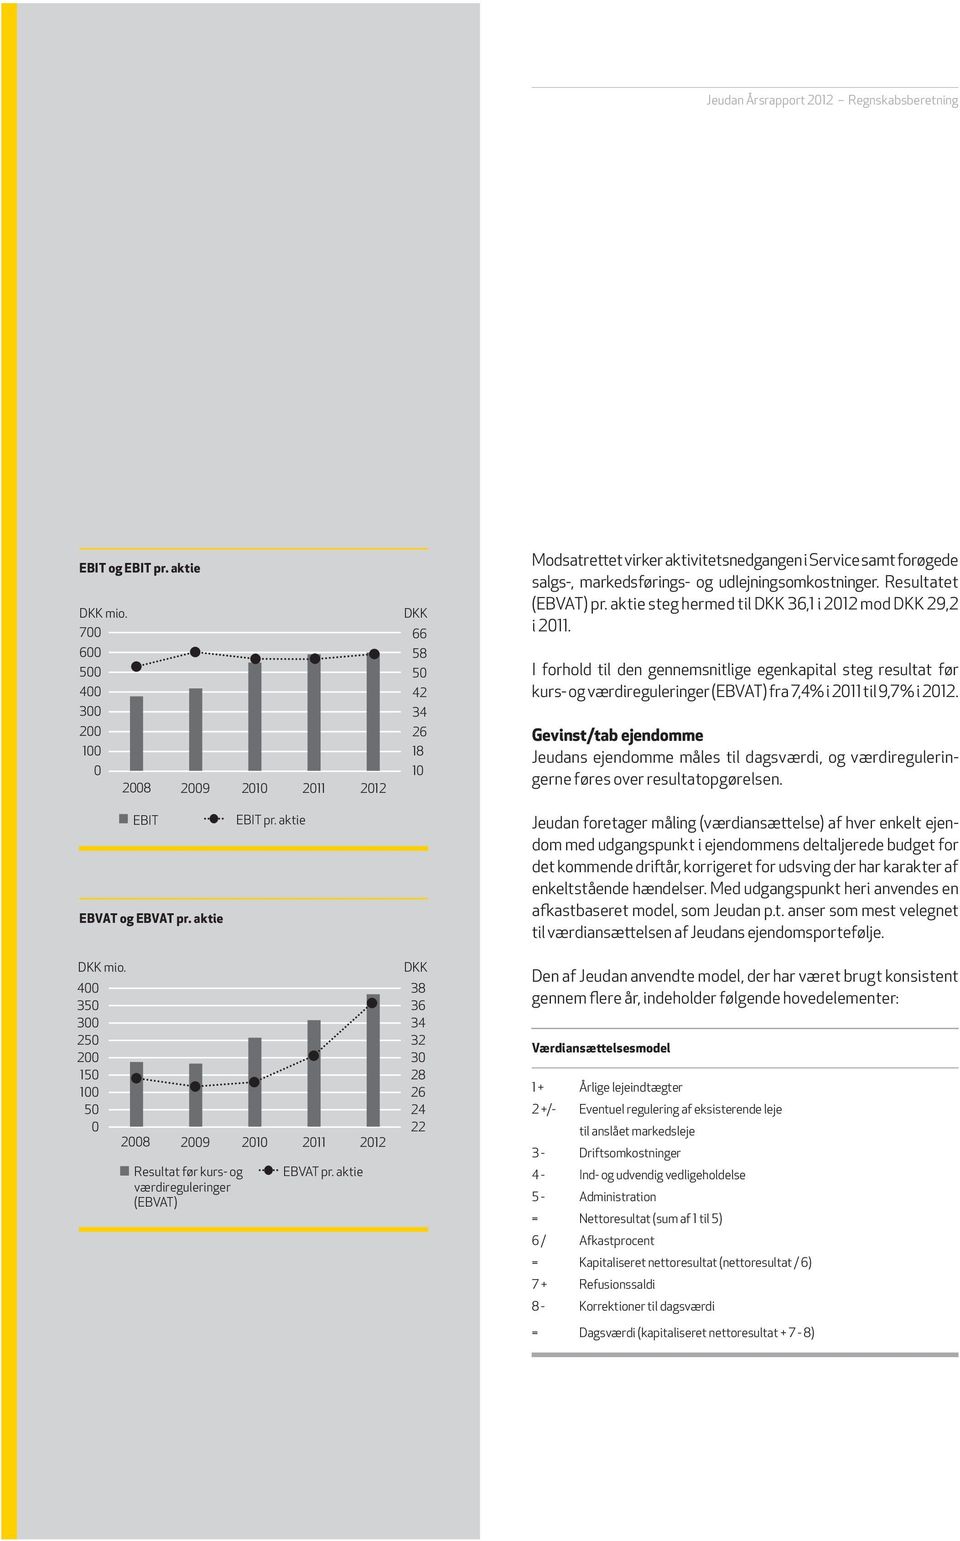 Resultatet (EBVAT) pr. aktie steg hermed til DKK 36,1 i 2012 mod DKK 29,2 i 2011.